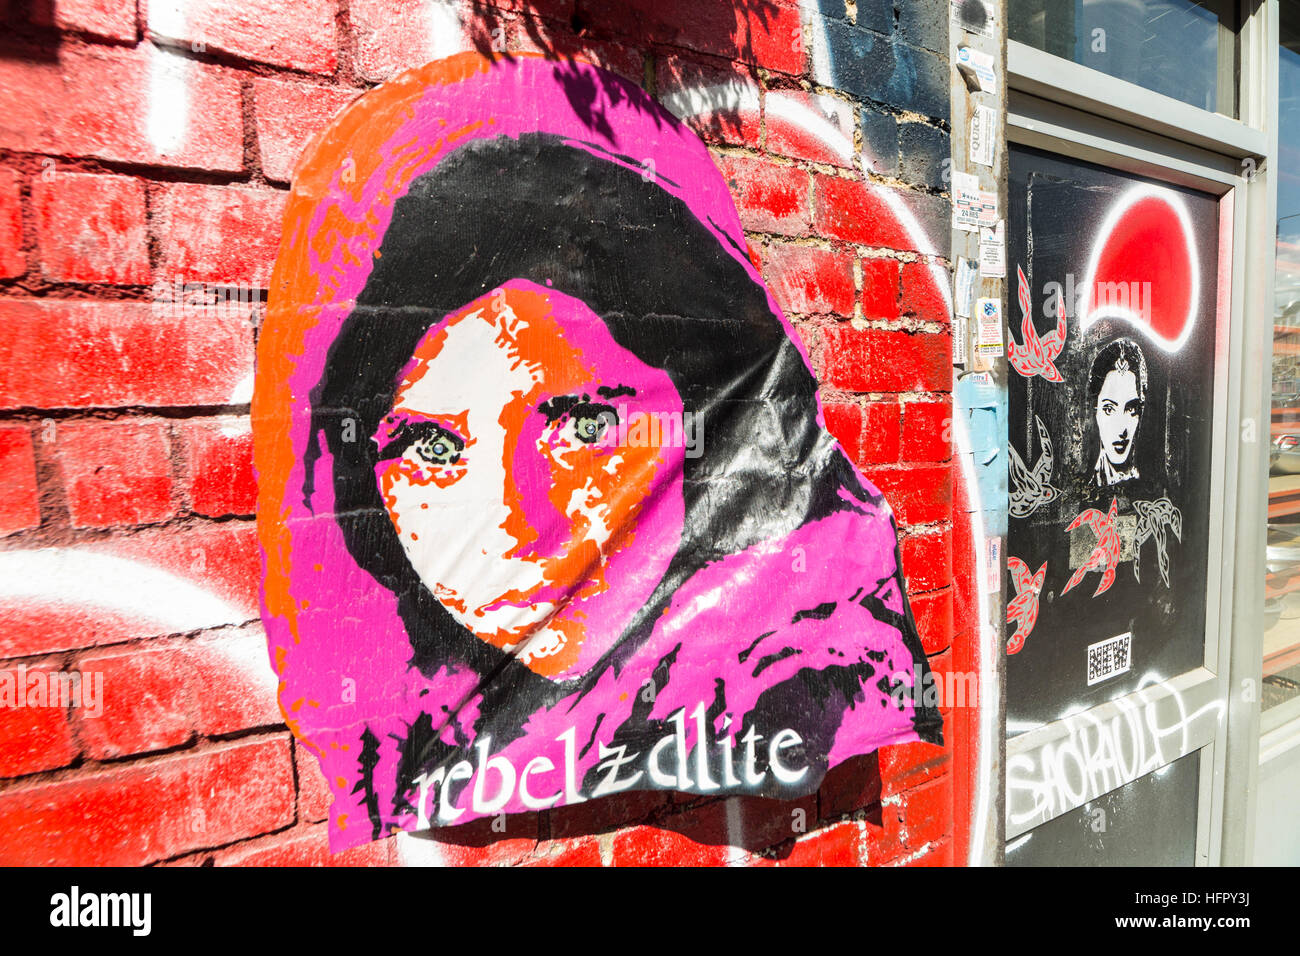 Shoreditch et Brick Lane creative graffiti et art social dans l'Est de Londres, UK Banque D'Images